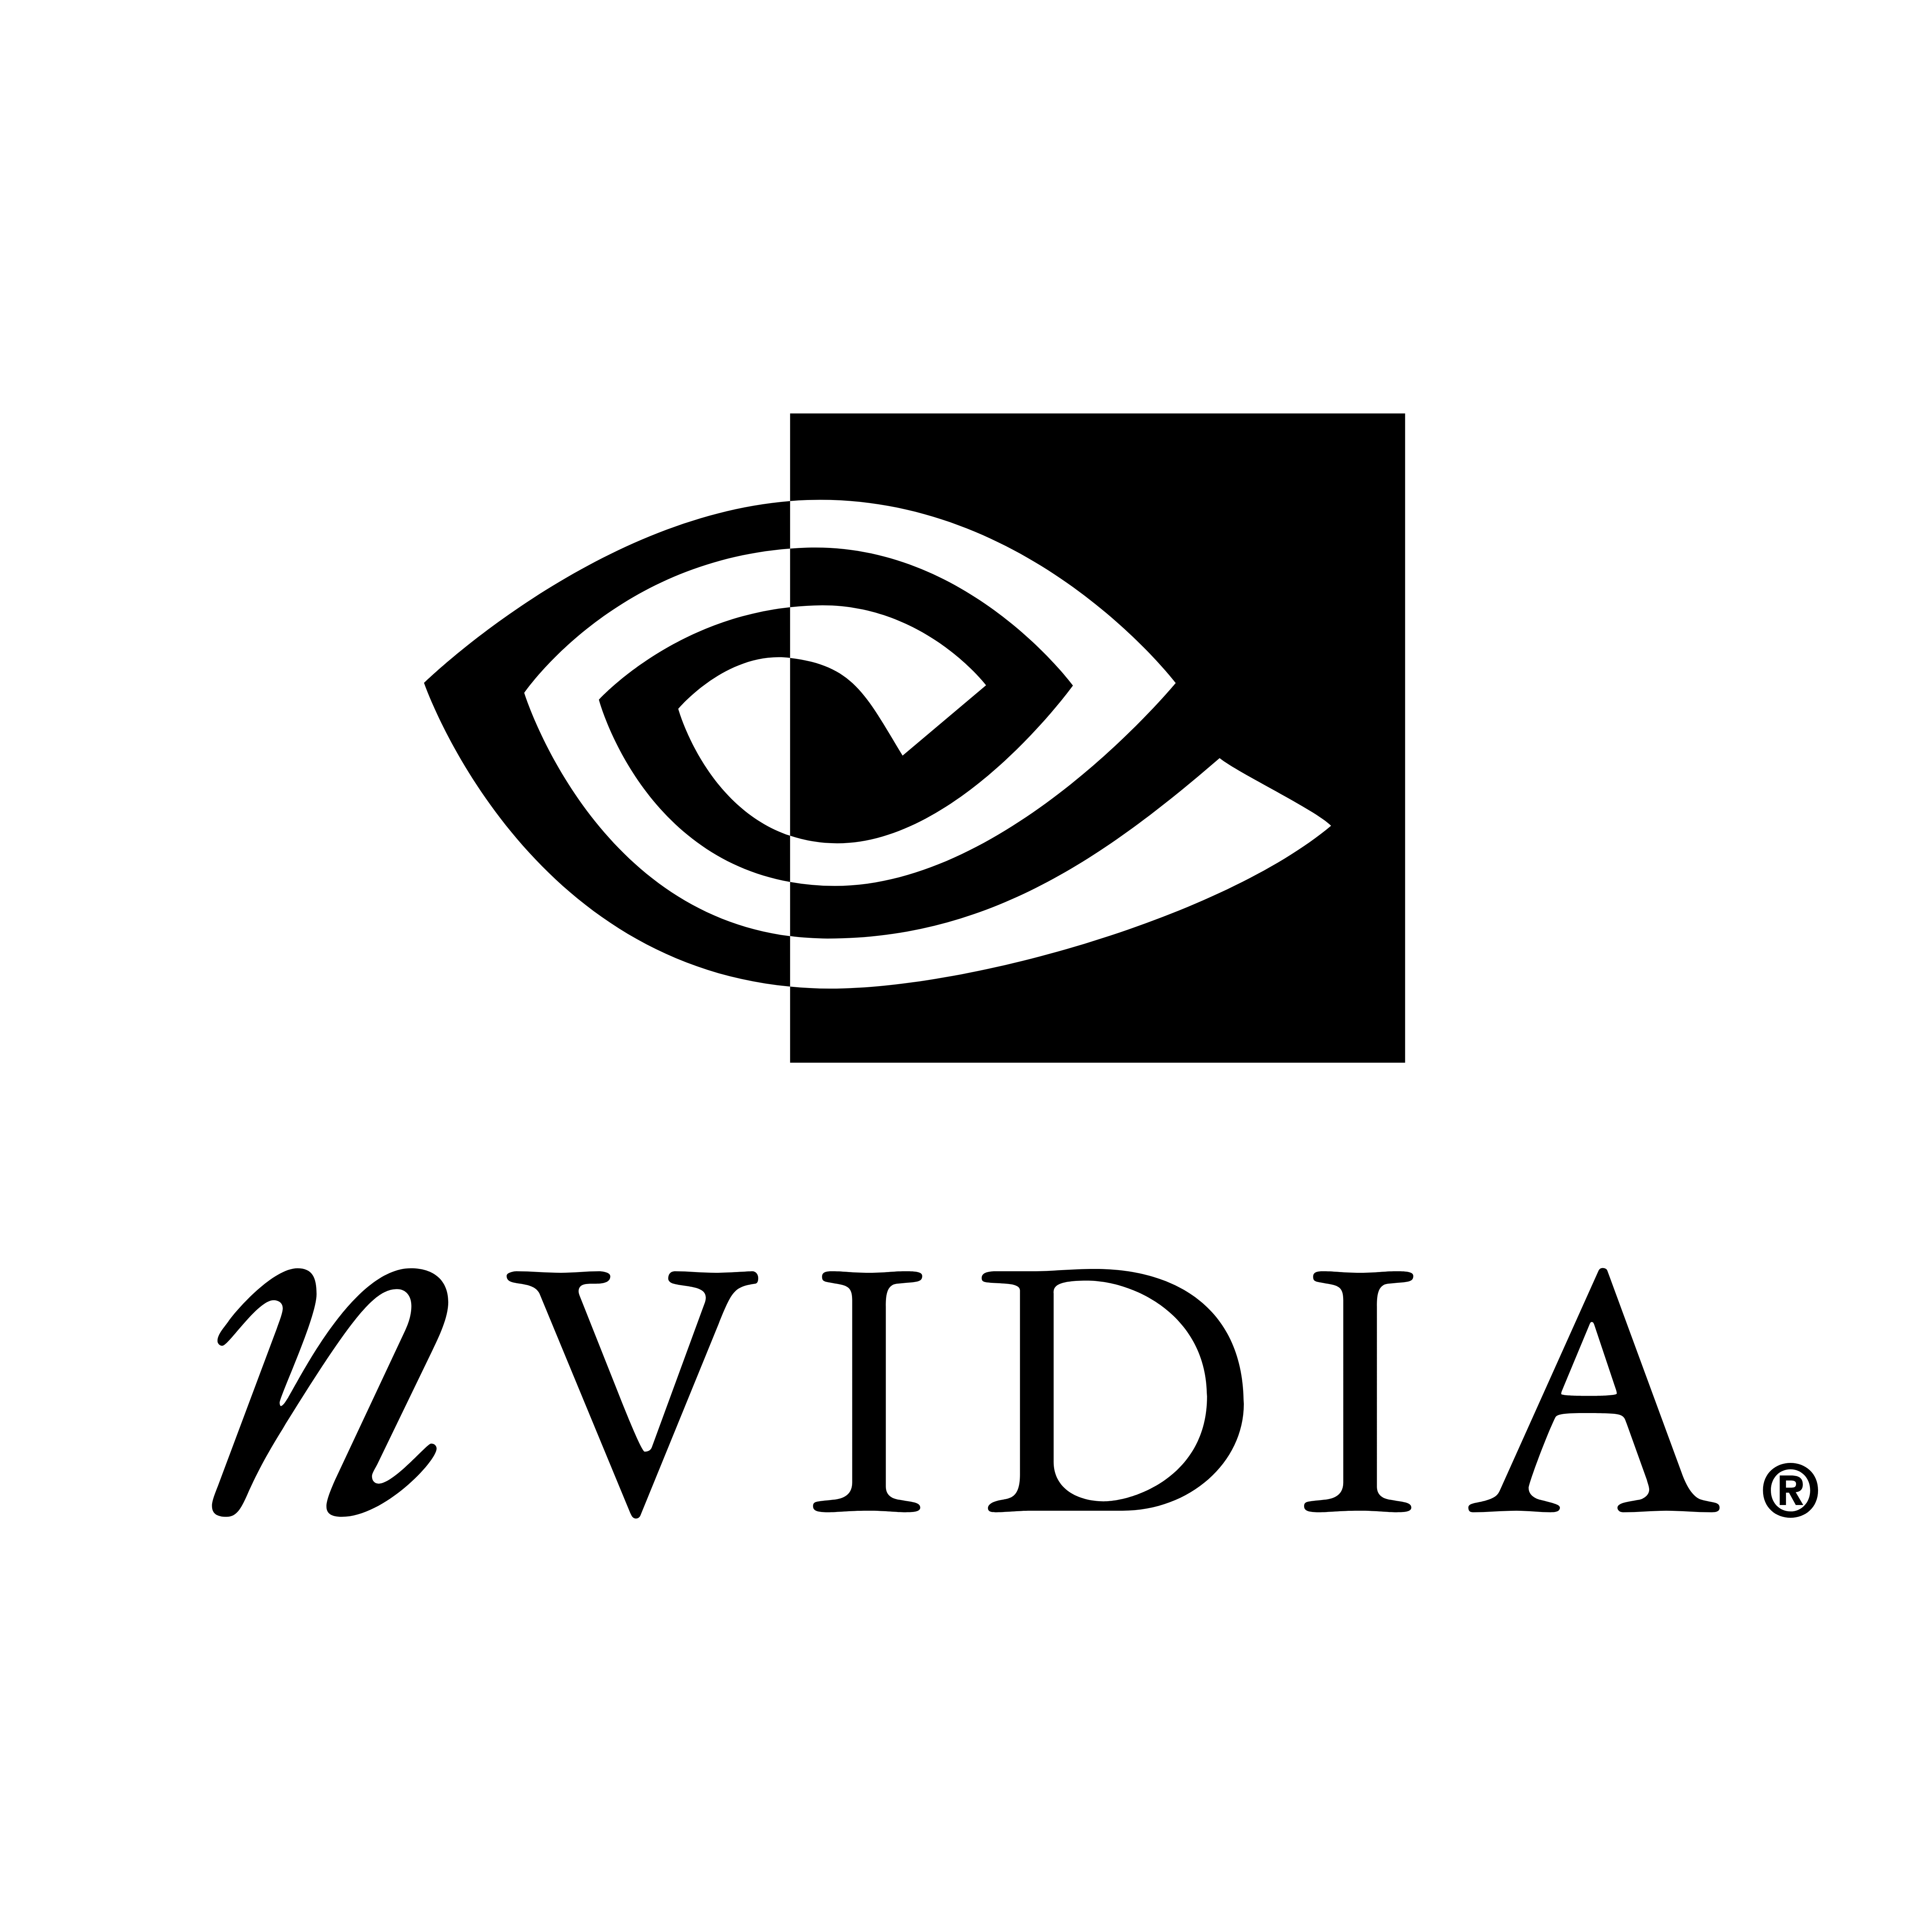 Nvidia Logo PNG - 179793